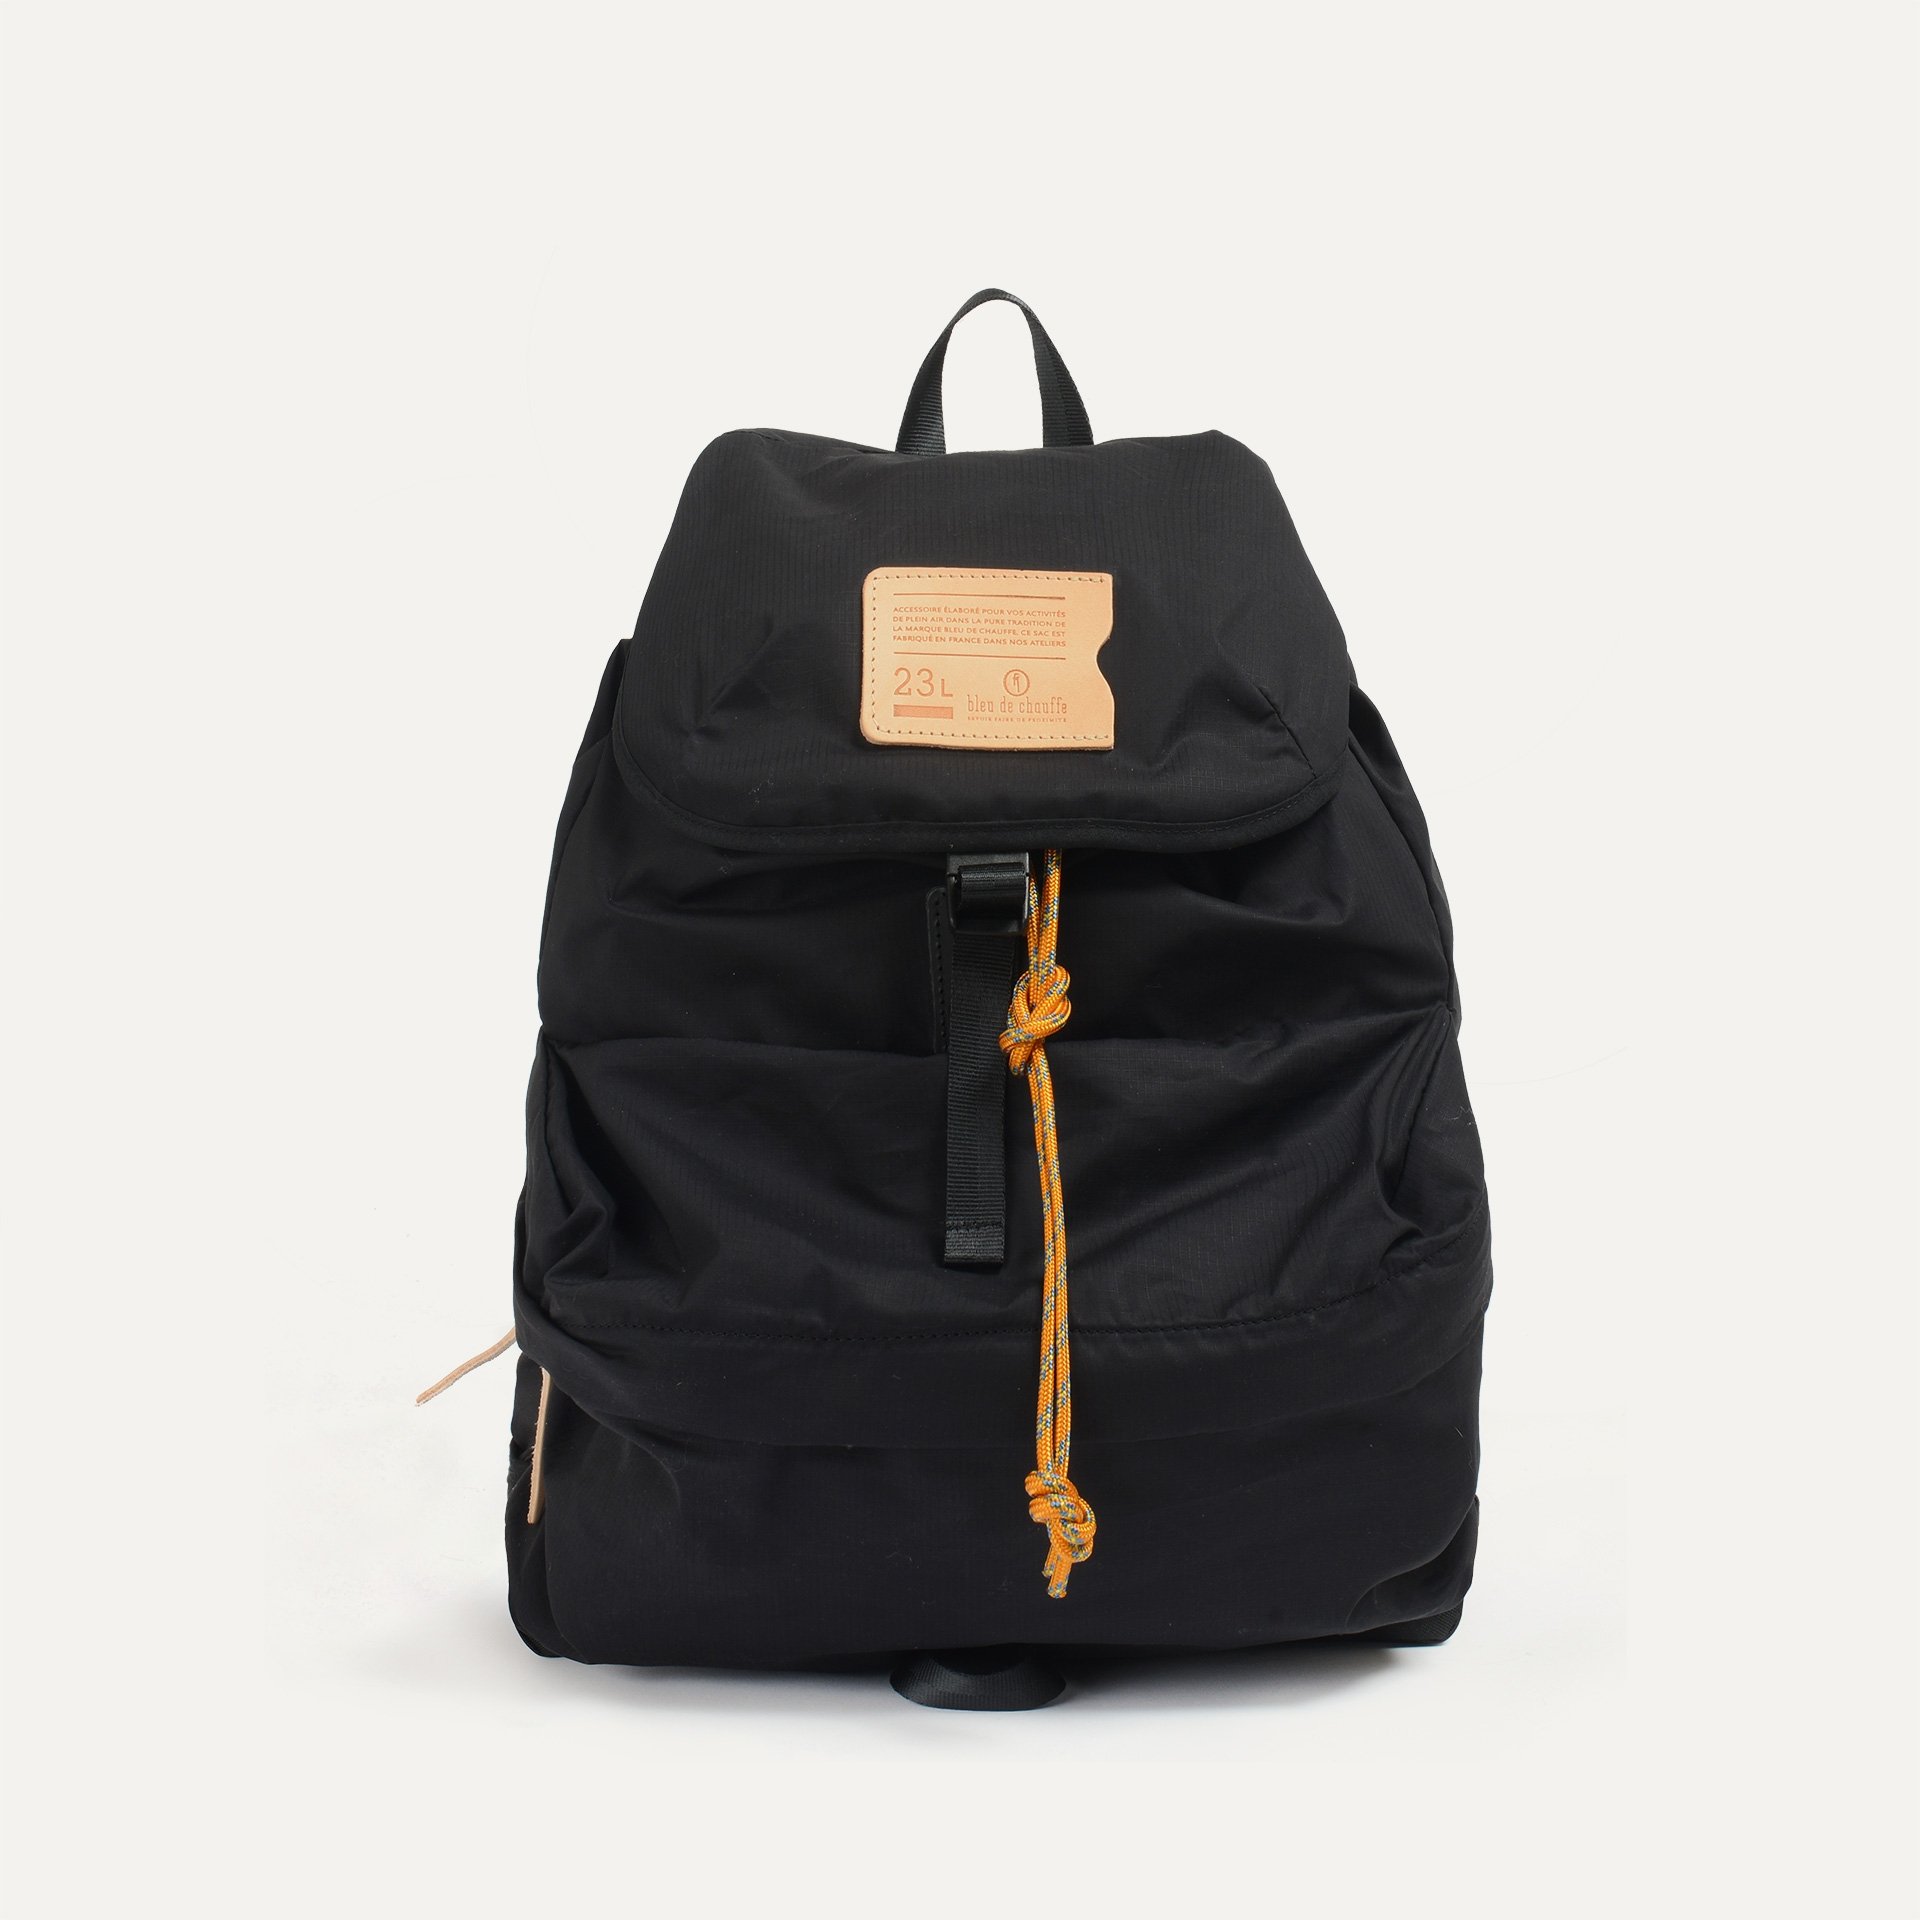 23L Bayou Backpack - Black (image n°1)